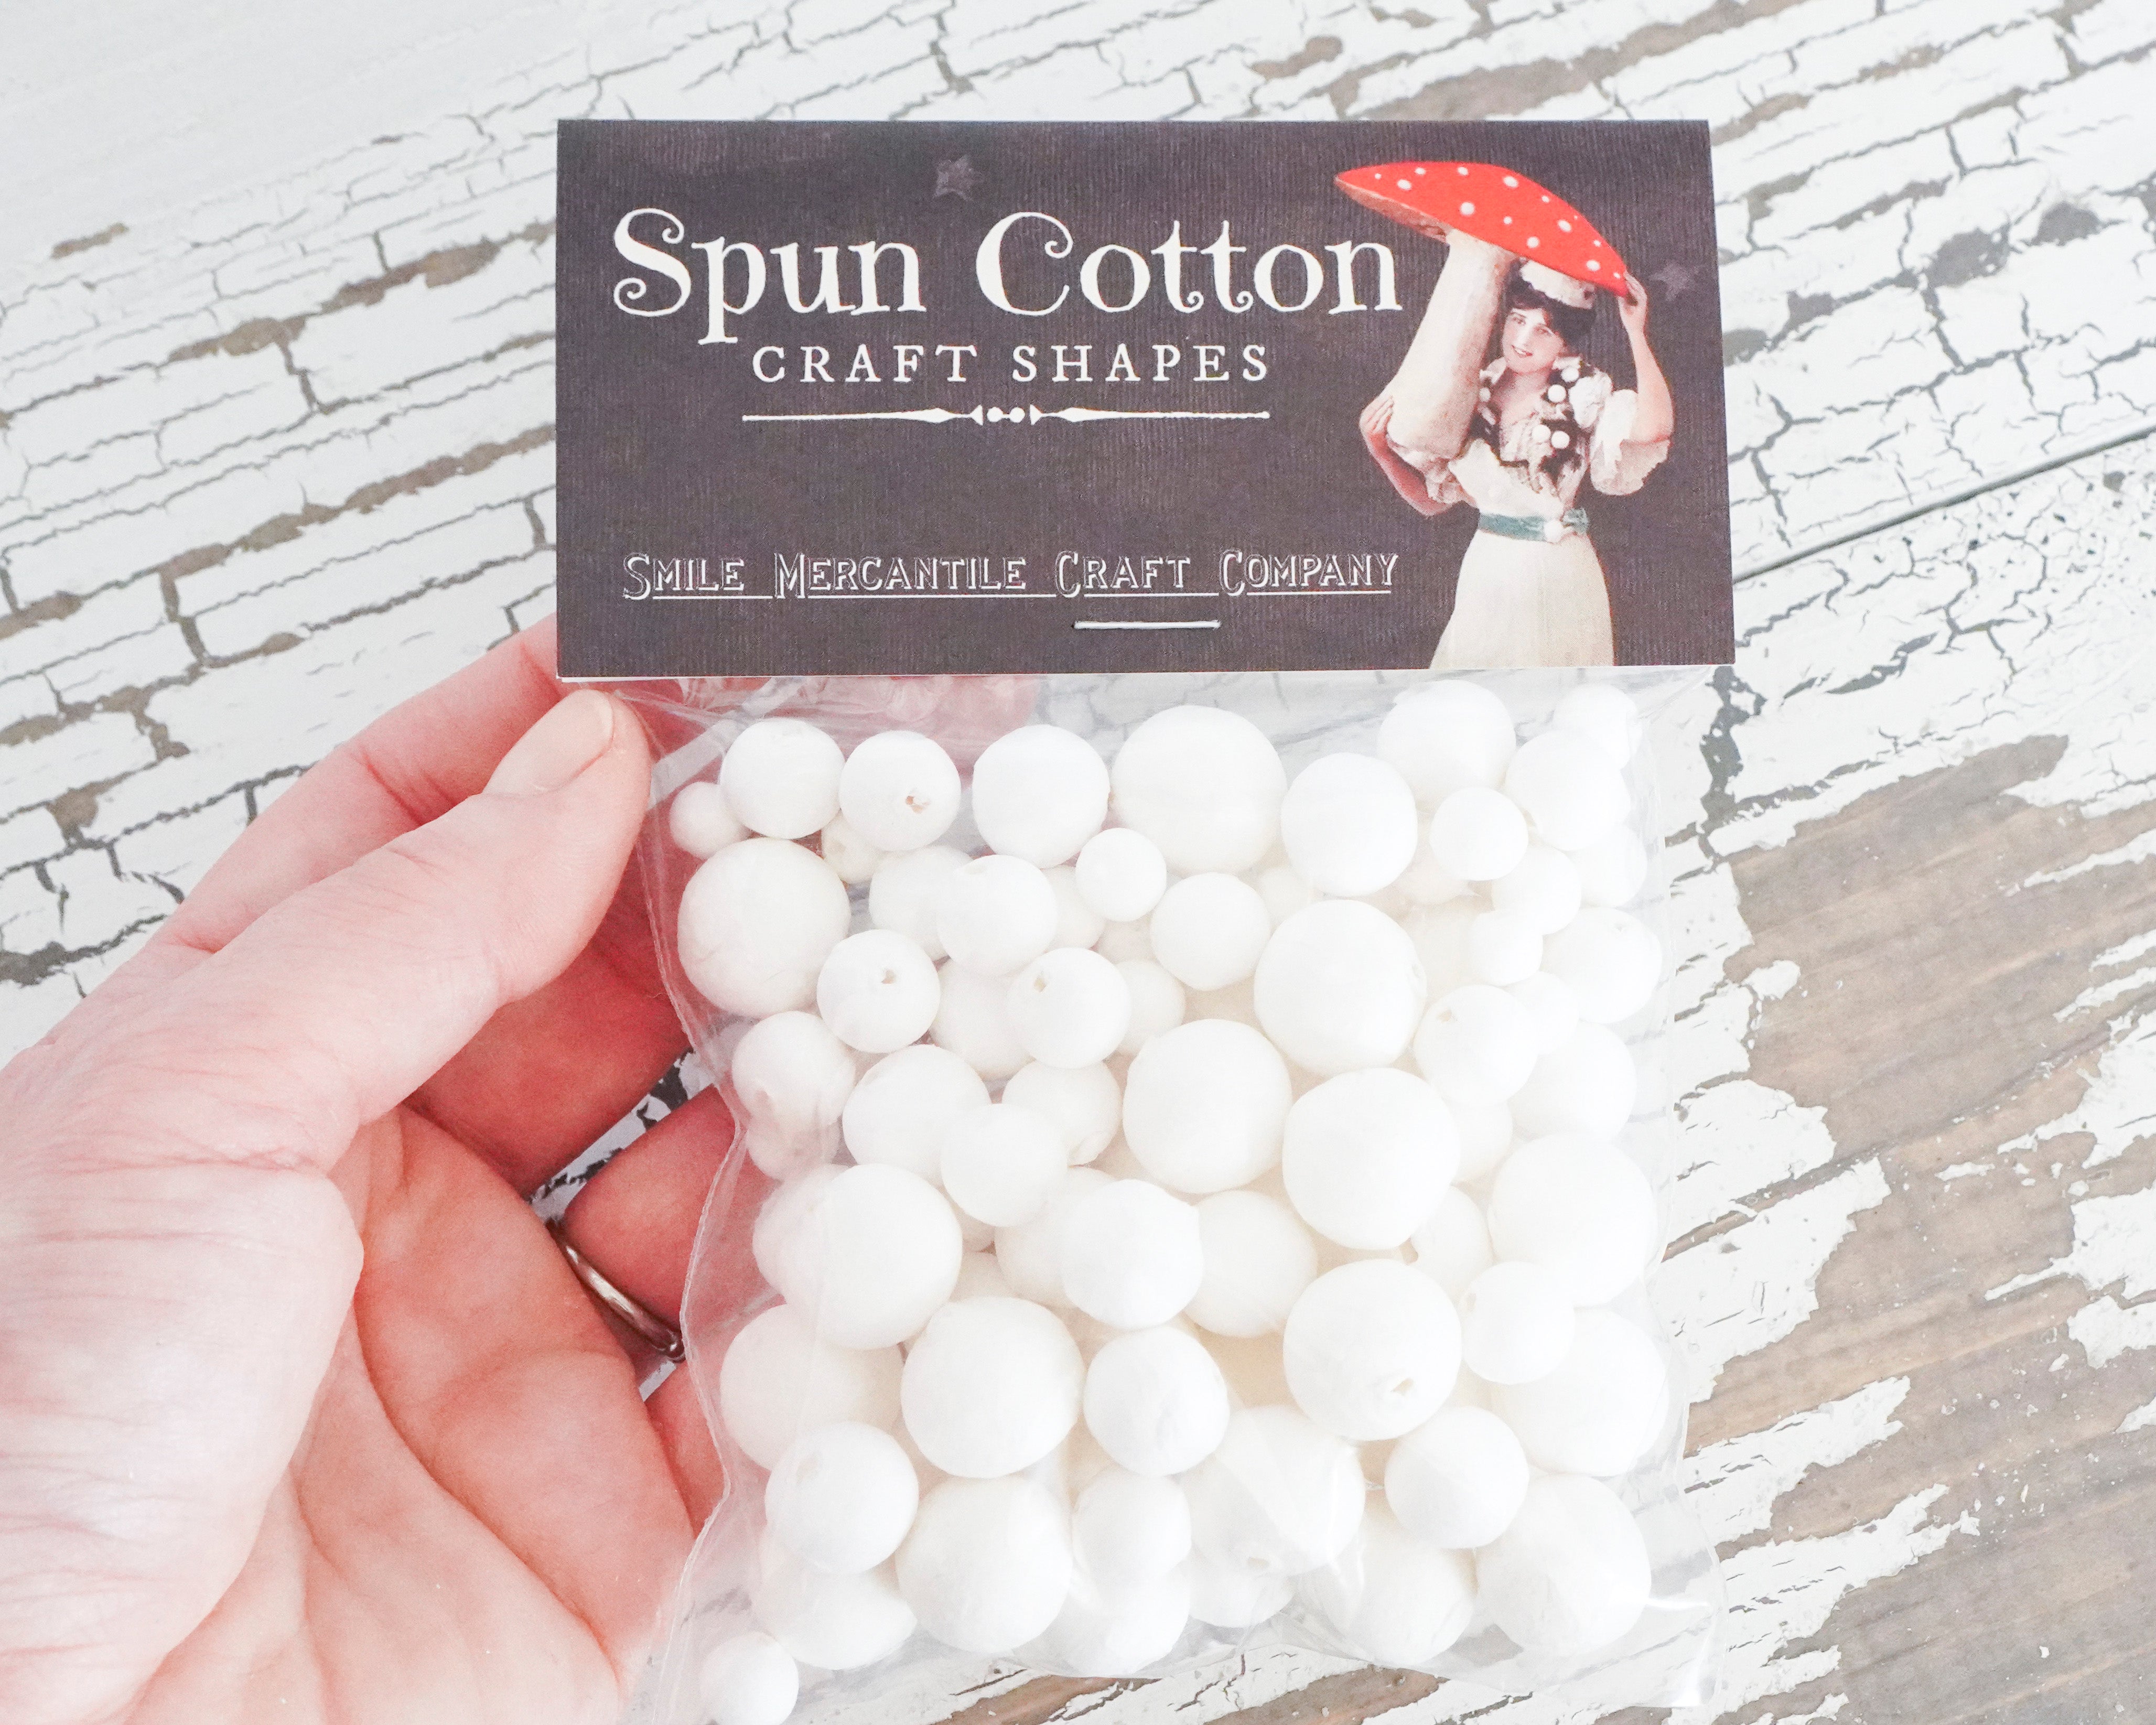 Tiny Spun Cotton Balls Sampler Pack, Mixed Small-Size Paper Ball Craft Shapes, 100 Pcs.